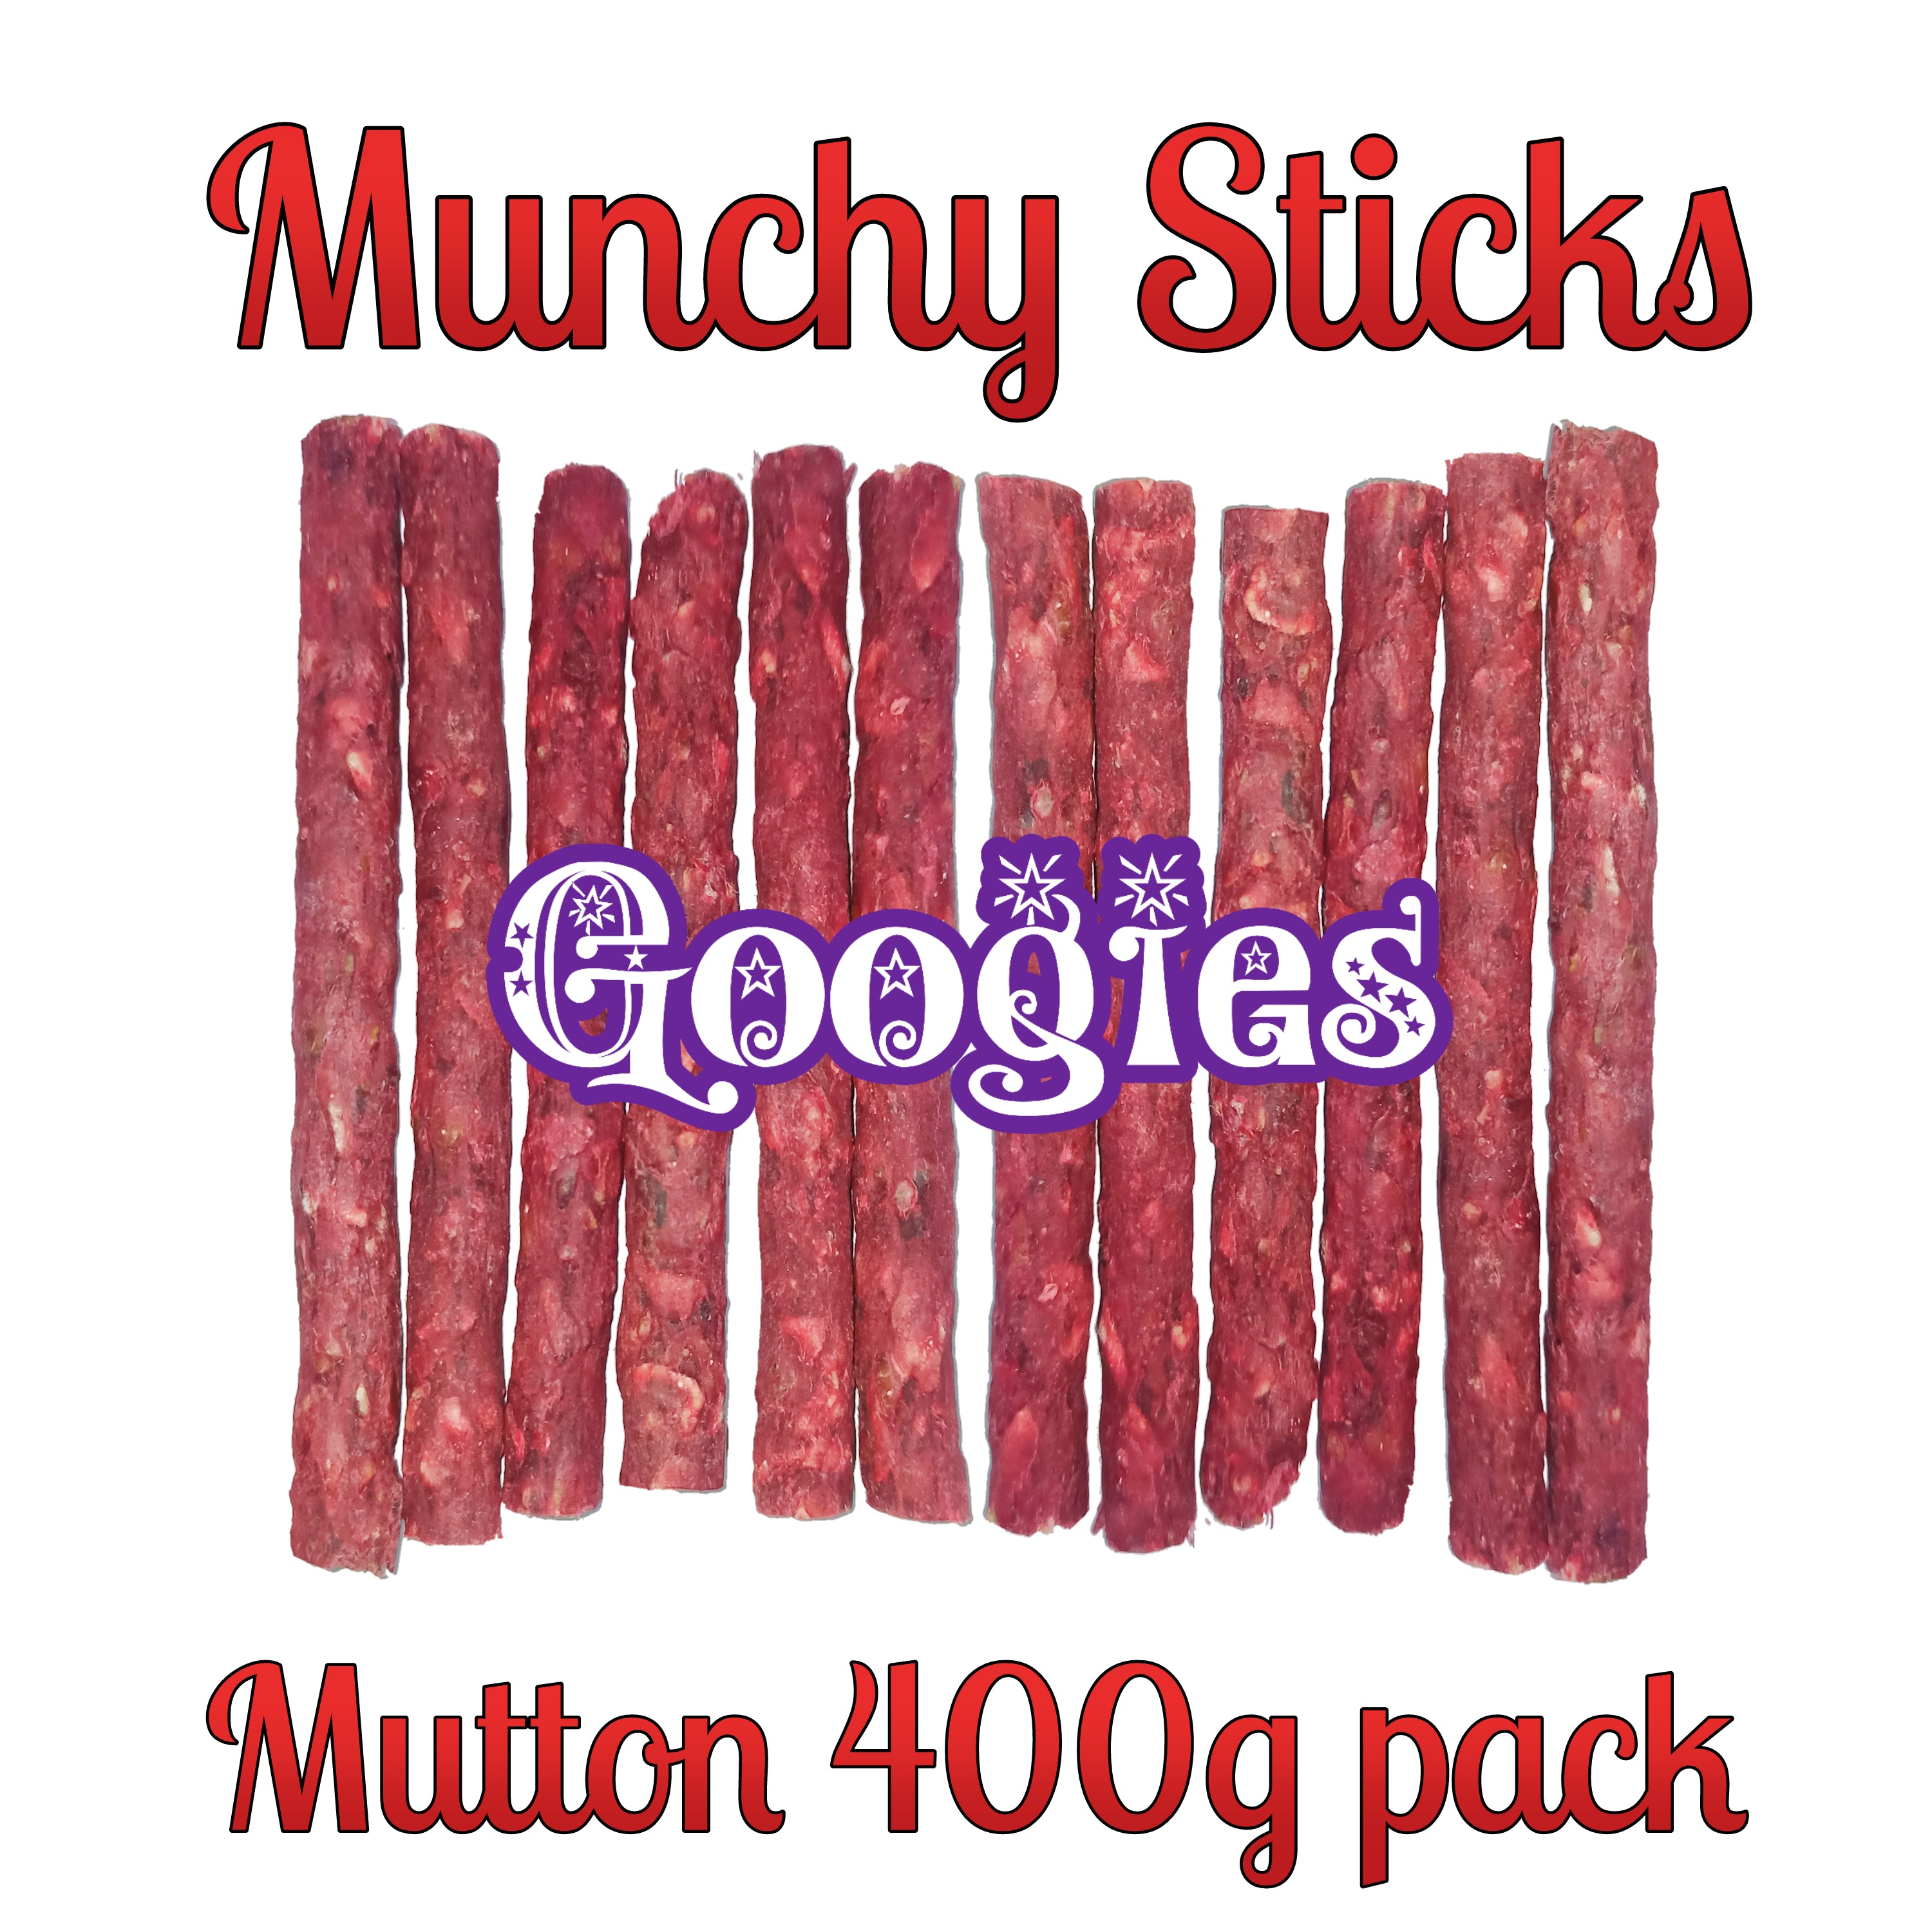 Googies Munchy Sticks Mutton pack of 400g Dog Treats